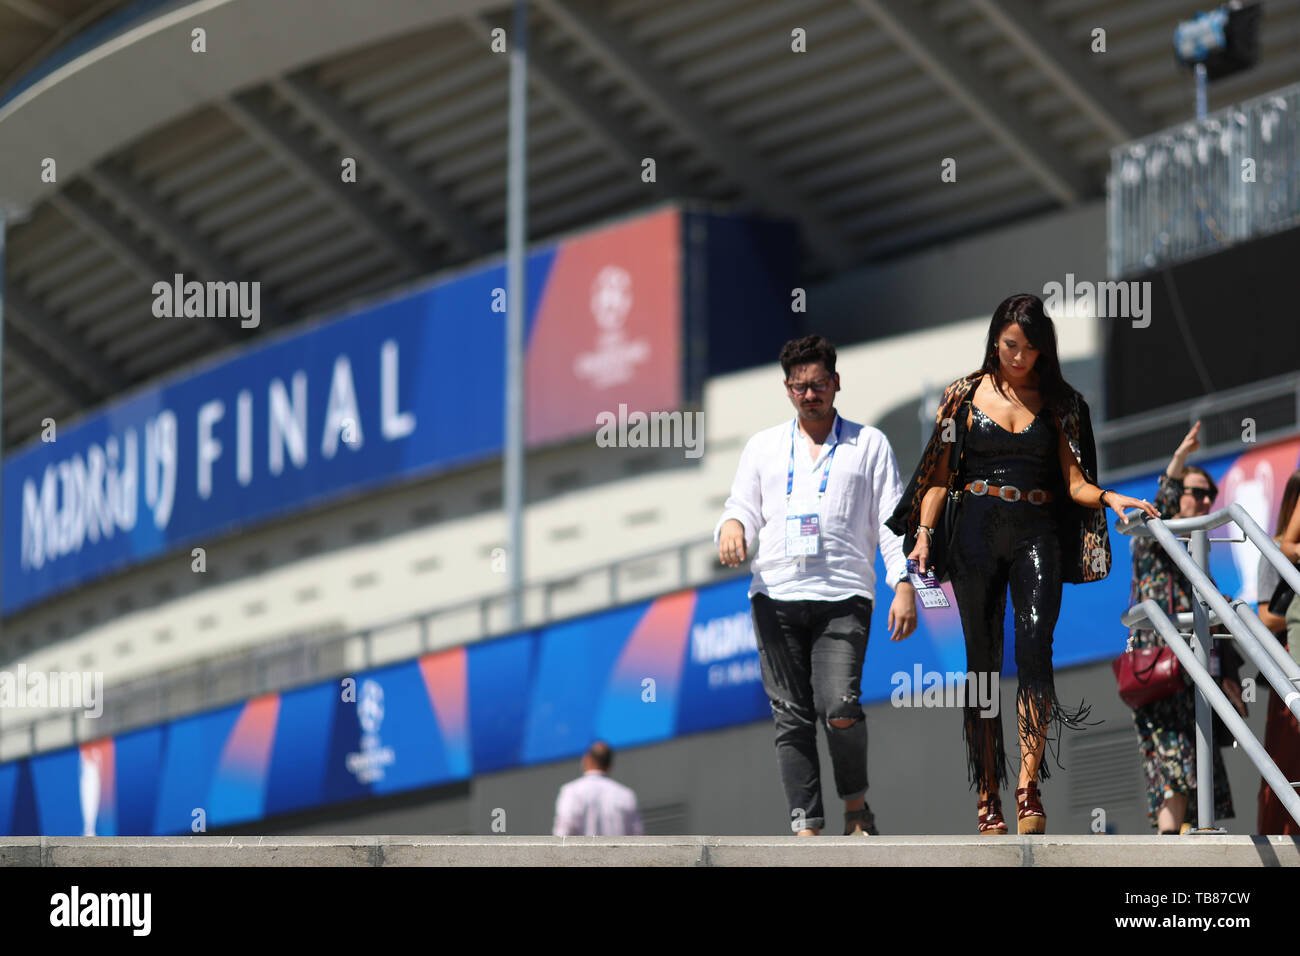 Pilar Rubio Fernandez, épouse du joueur du Real Madrid Sergio Ramos et présentateur de télévision espagnole arrive au stade de la finale de la Ligue des Champions - Bâtir l'avenir du match entre Tottenham Hotspur v Liverpool, Wanda Stade Metropolitano, Madrid - 30 mai 2019 Banque D'Images